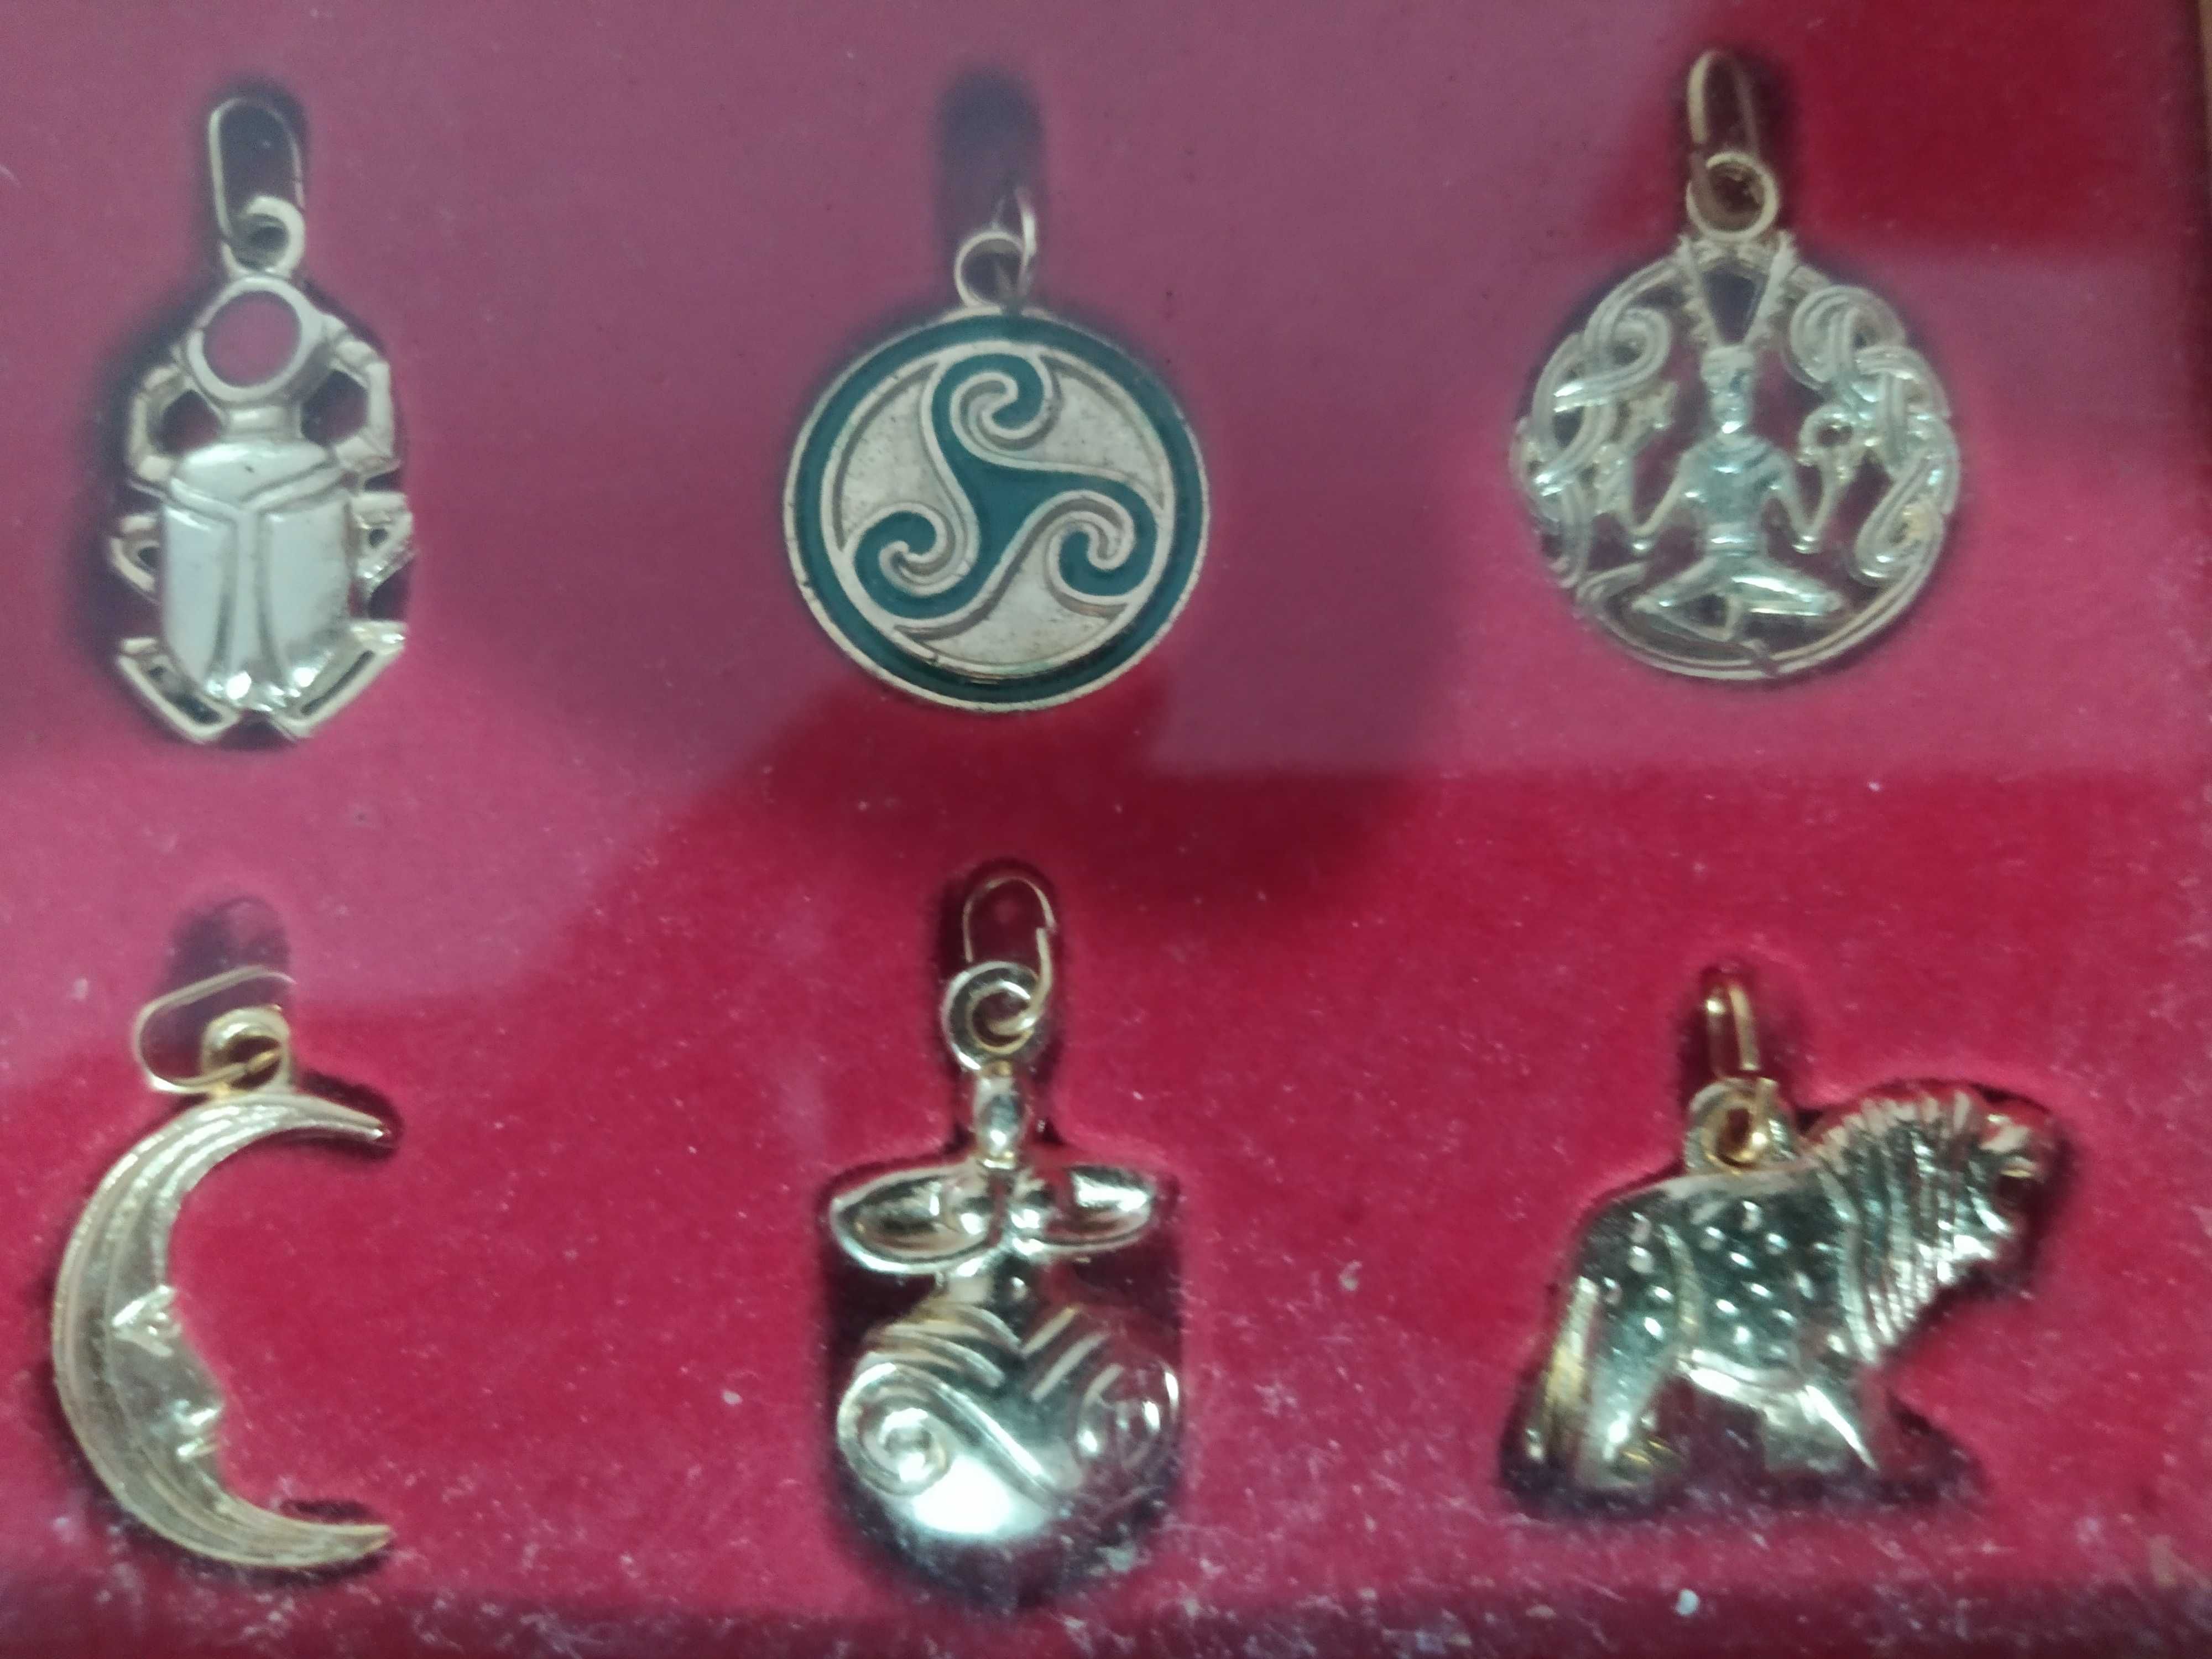 amuletos da sorte encaixilhados